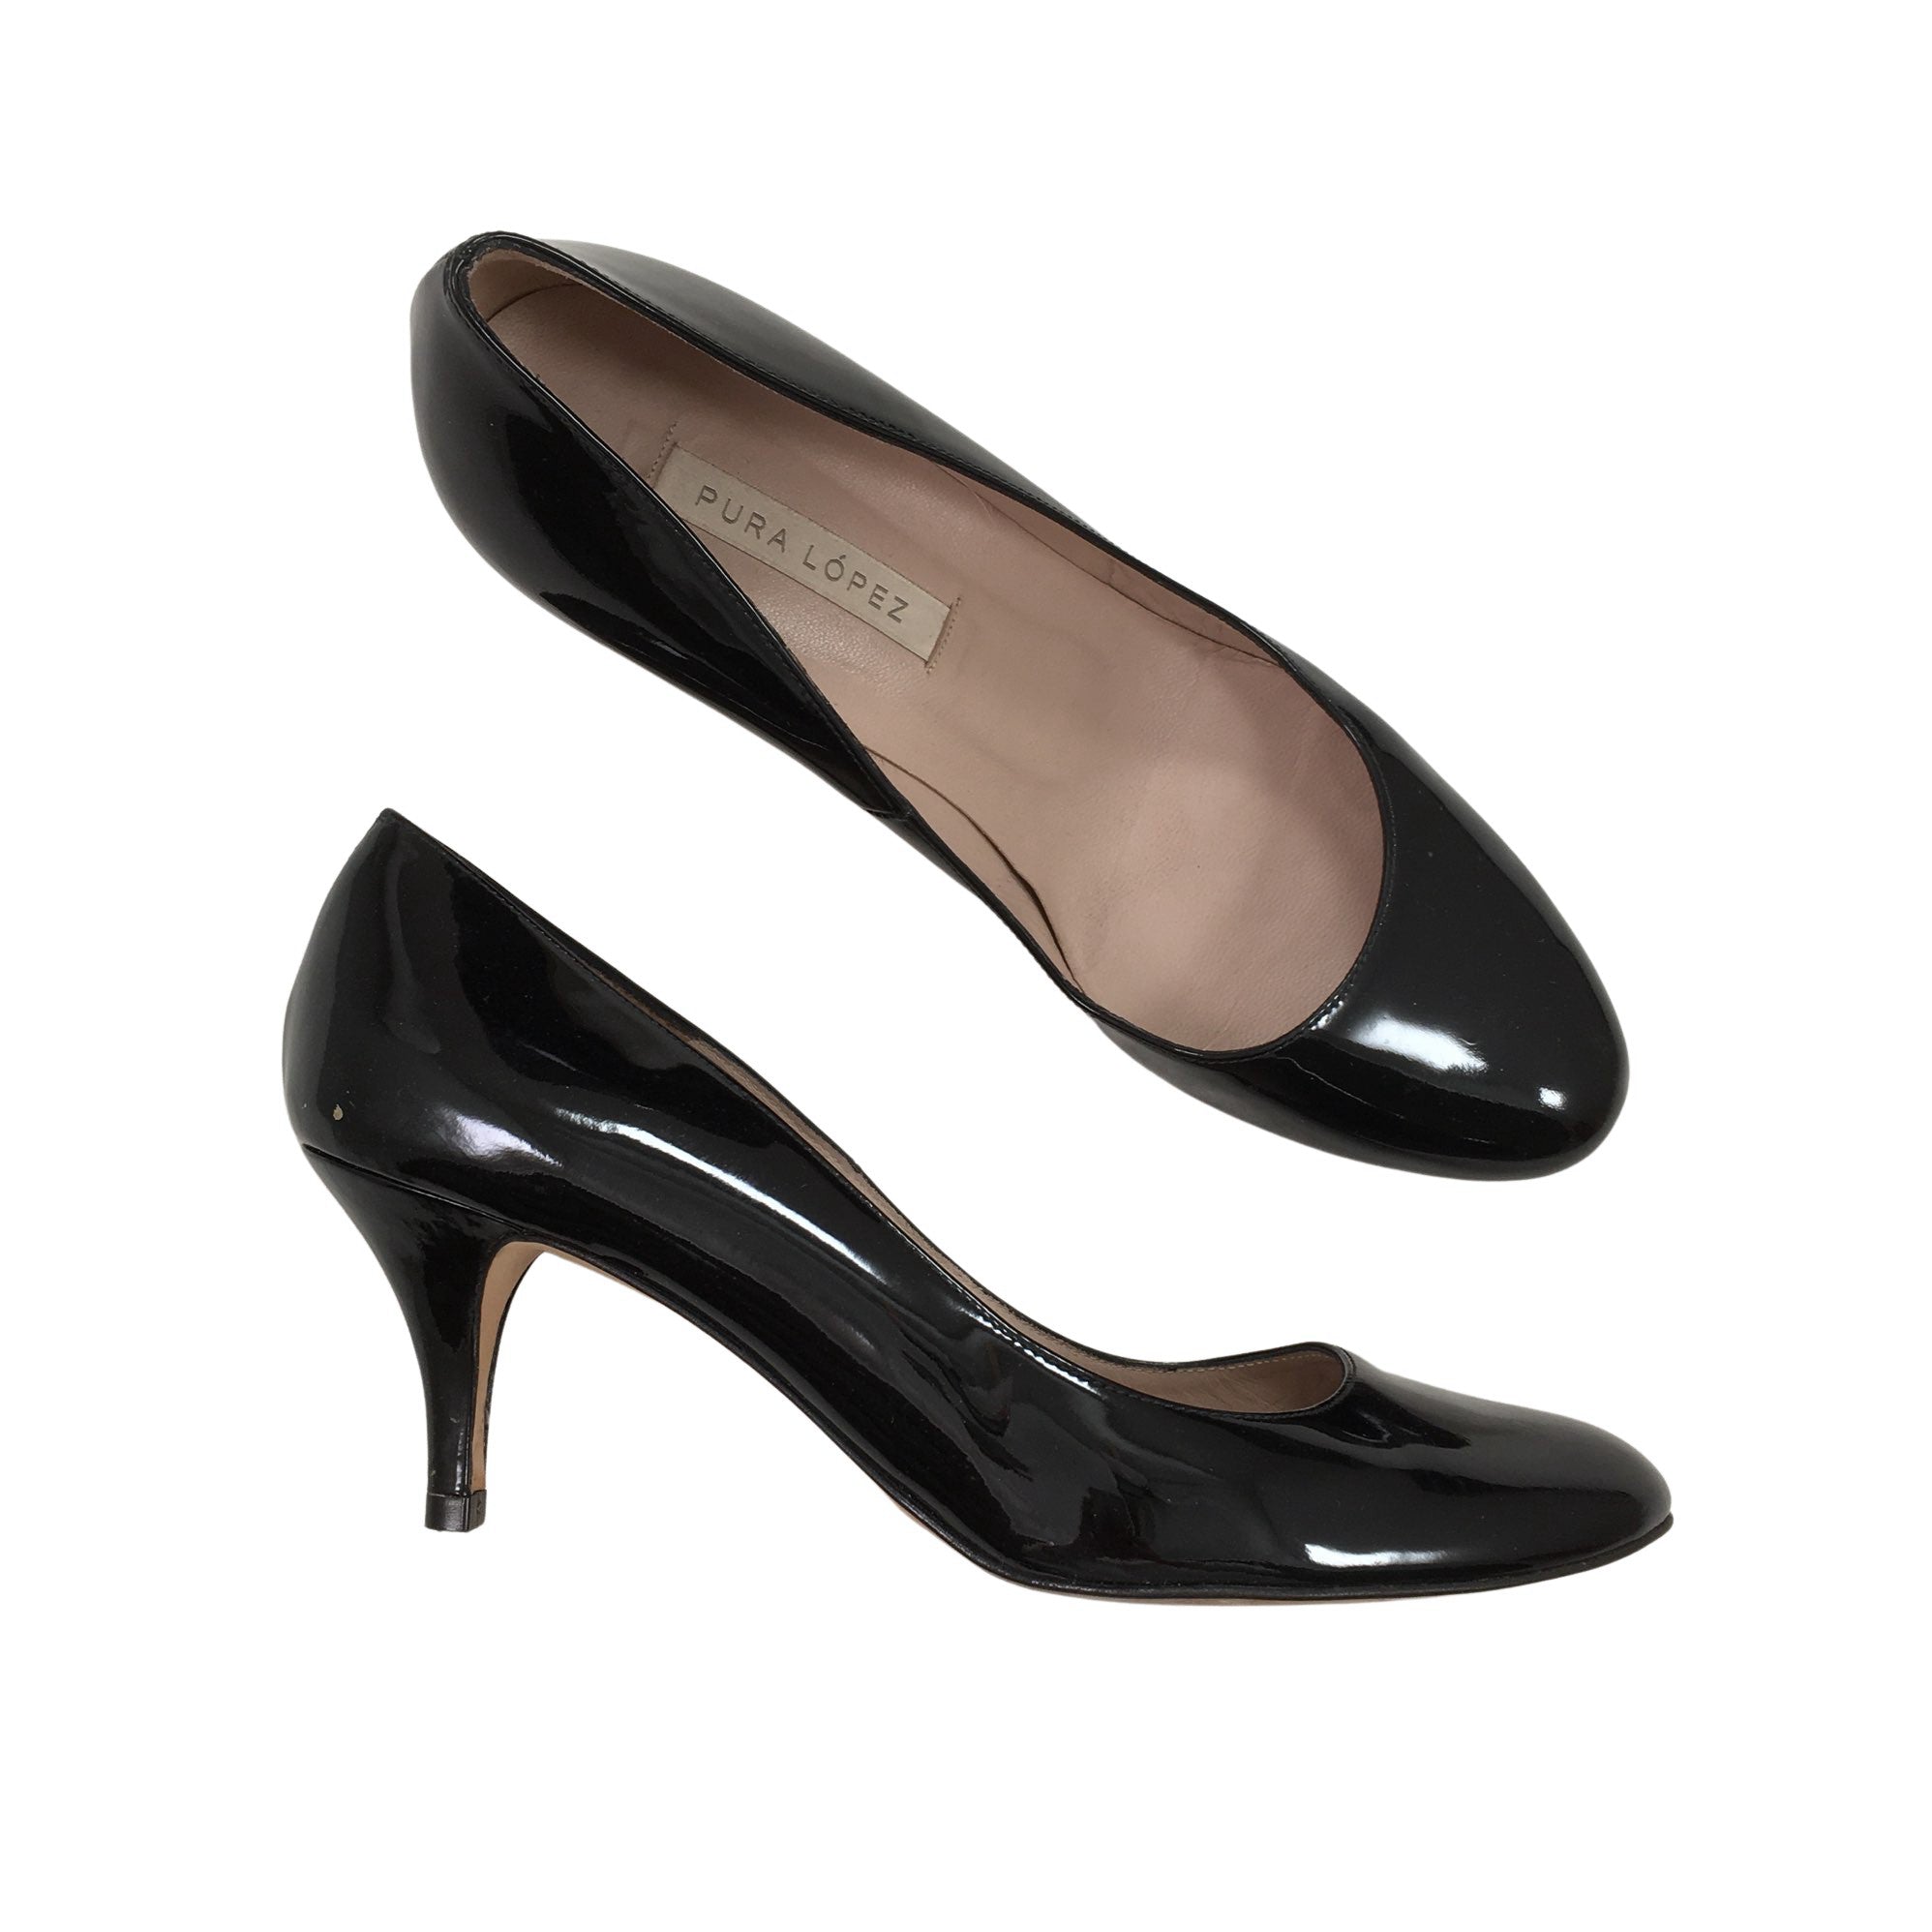 orientering Bevise kom sammen Women's Pura Lopez High heels, size 38 (Black) | Emmy